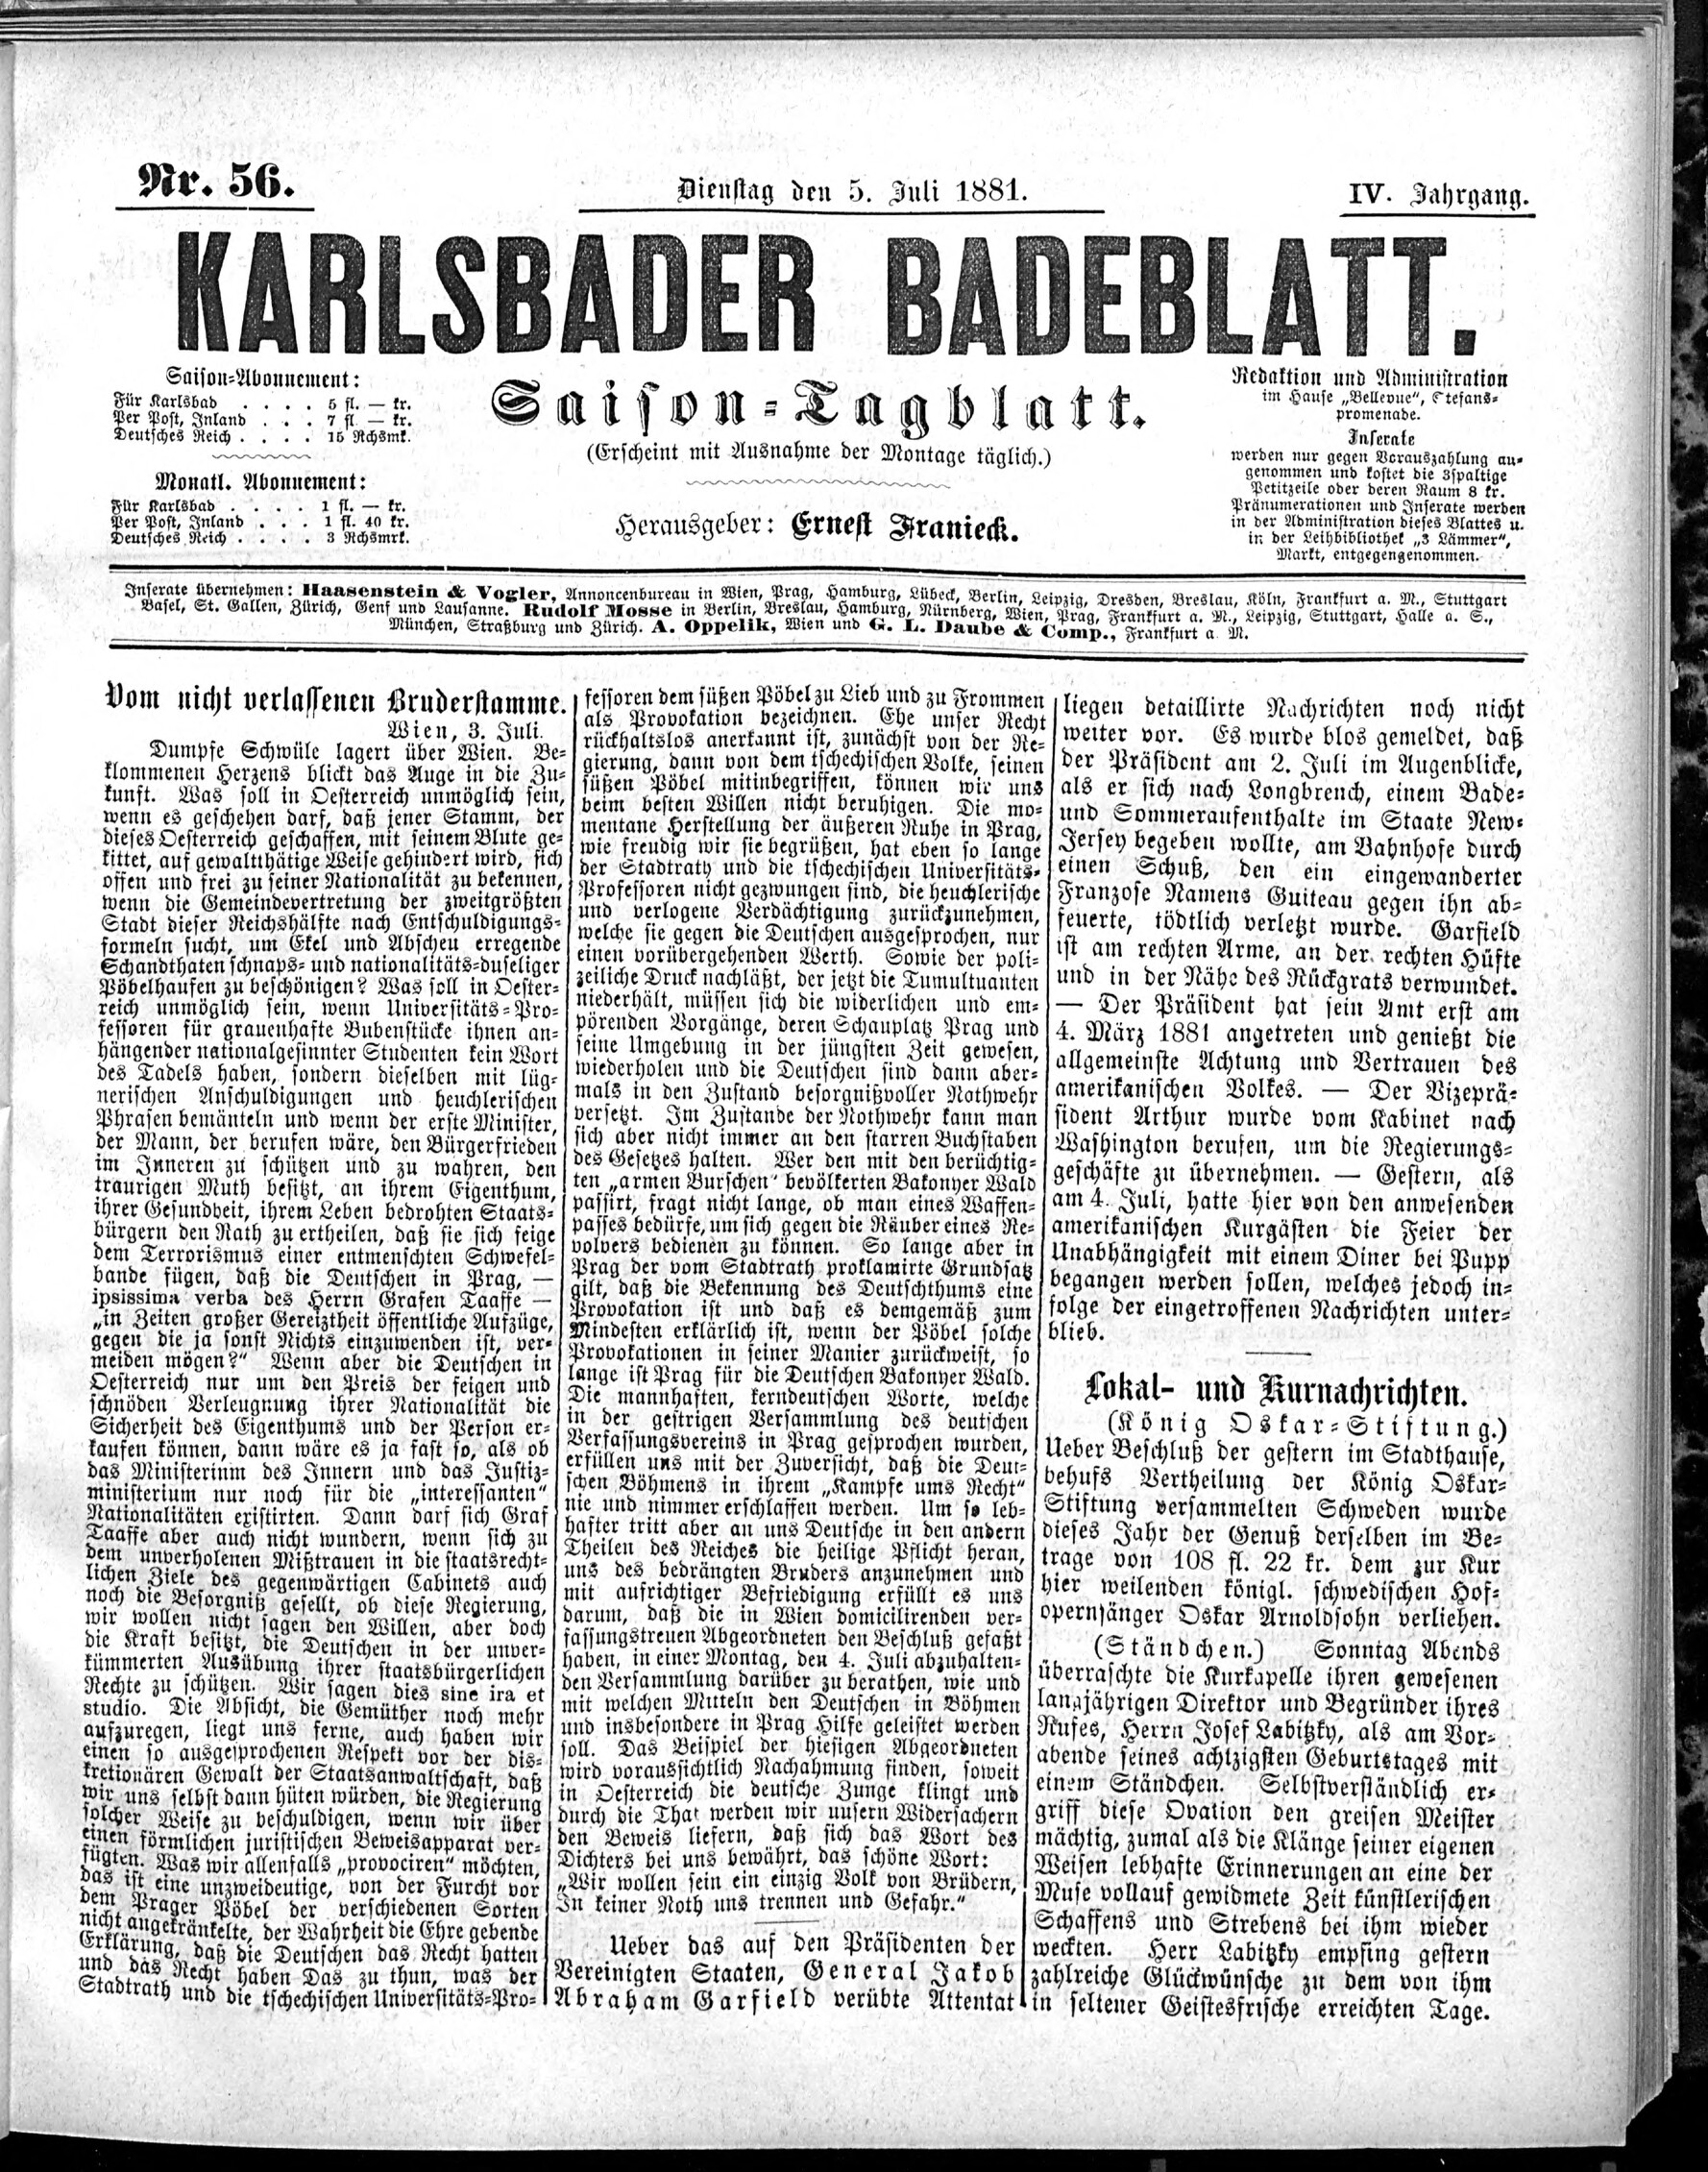 1. karlsbader-badeblatt-1881-07-05-n56_1165